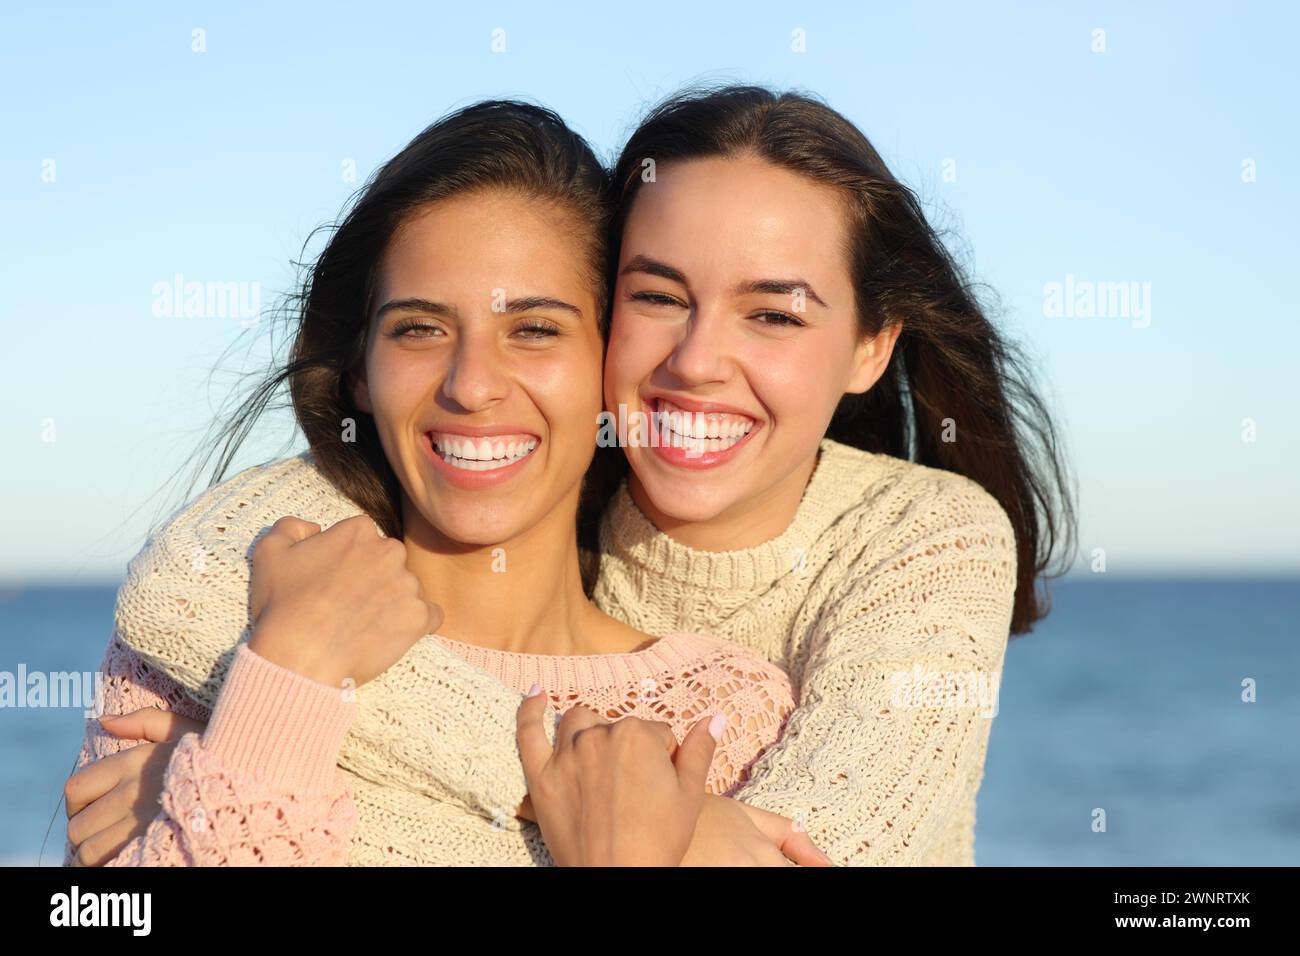 Retrato de vista frontal de dos amigos felices que muestran una sonrisa perfecta en la playa Foto de stock